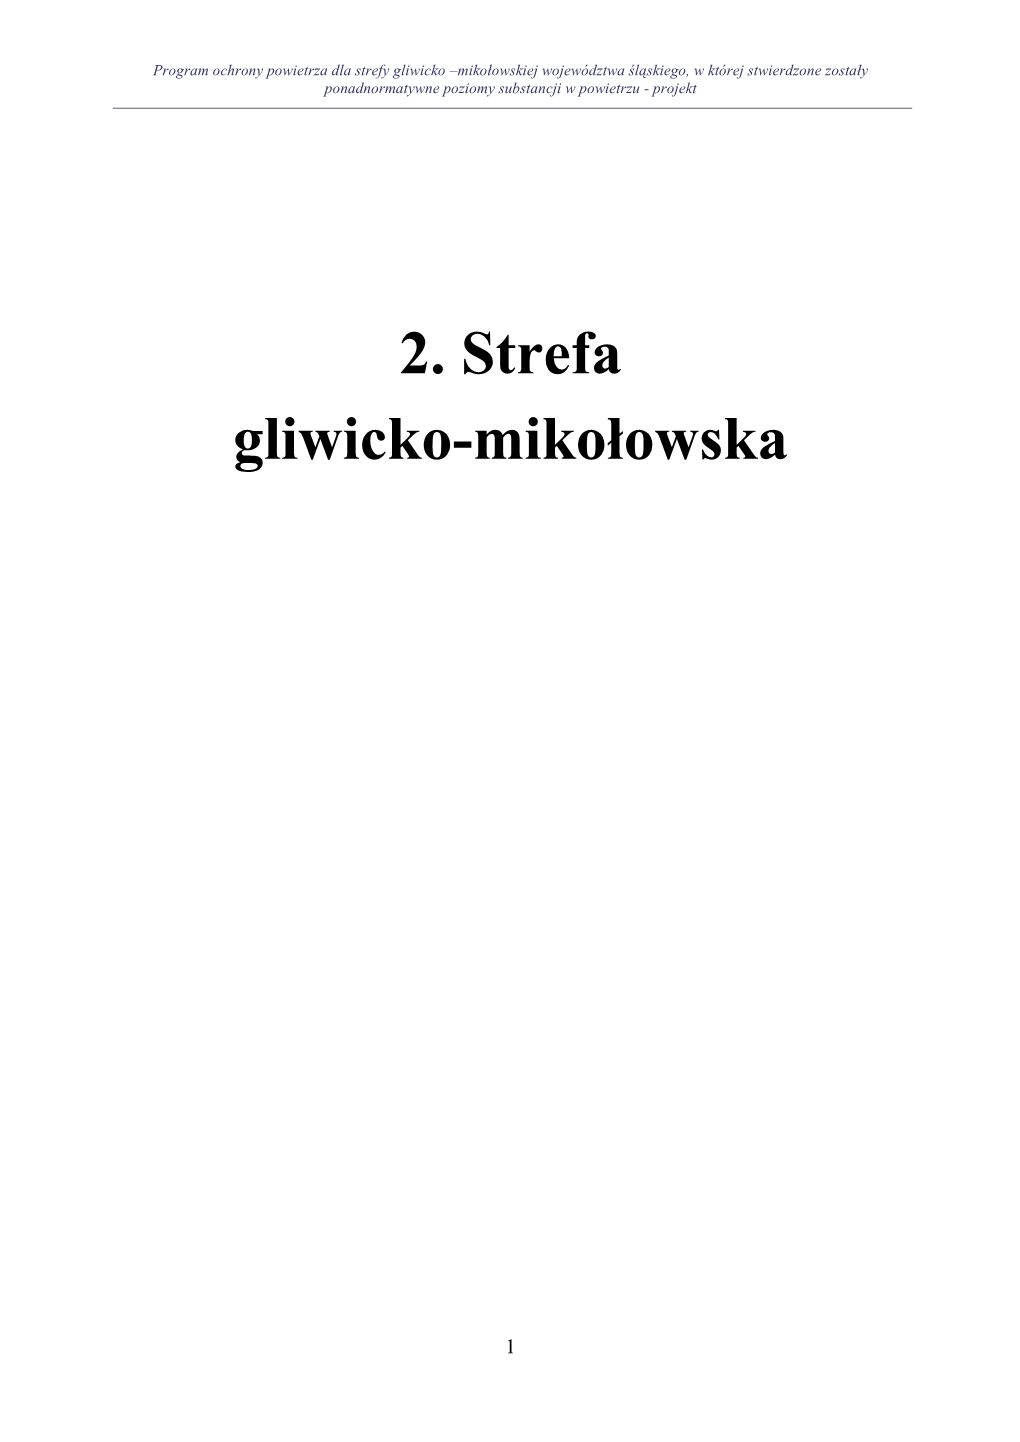 2. Strefa Gliwicko-Mikołowska